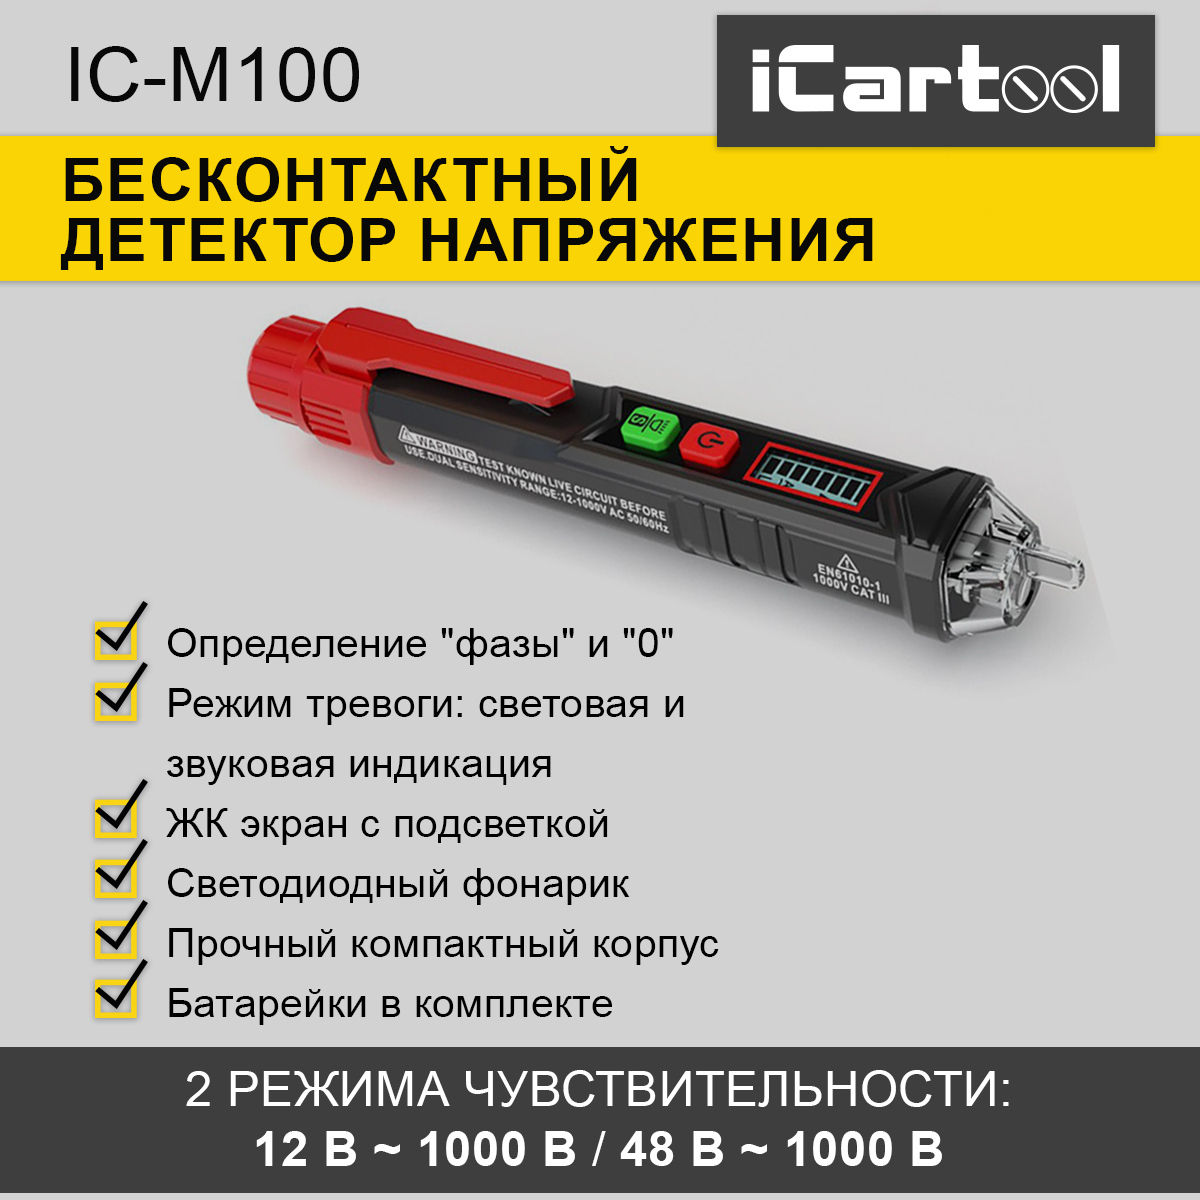 Бесконтактный детектор напряжения iCartool IC-M100 компактный стабилизатор напряжения эра